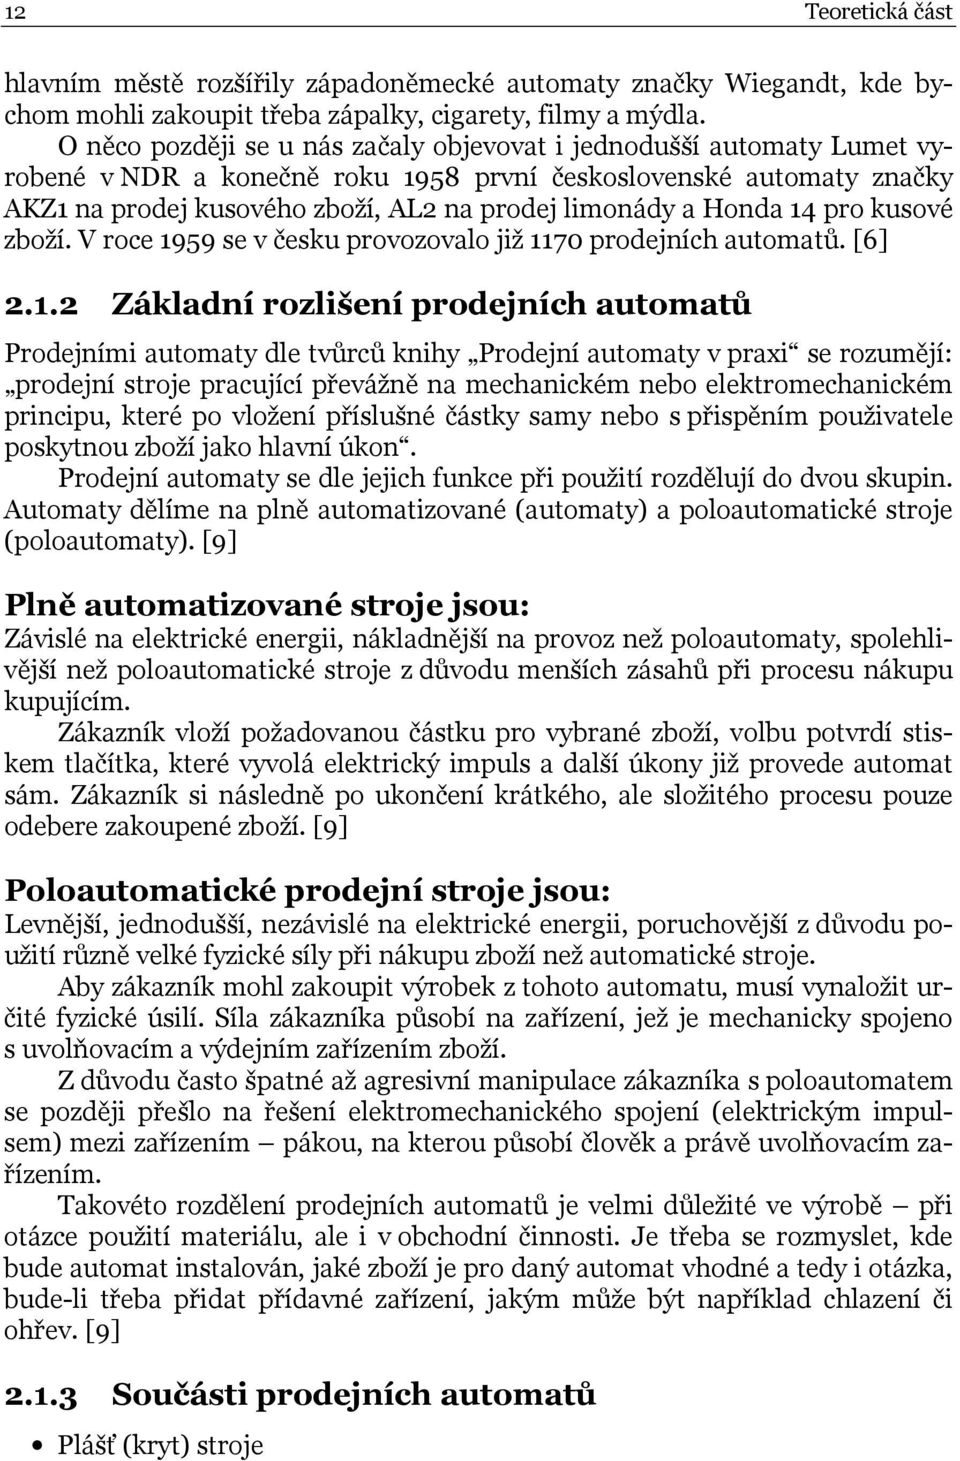 kusové zoží. V roce 959 se v česku provozovalo již 70 prodejních auomaů. [6].